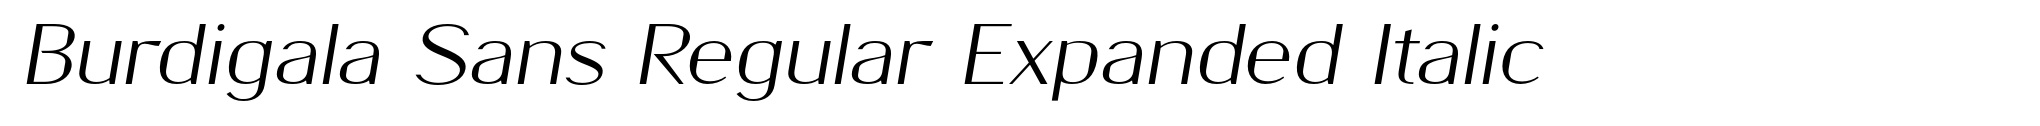 Burdigala Sans Regular Expanded Italic image